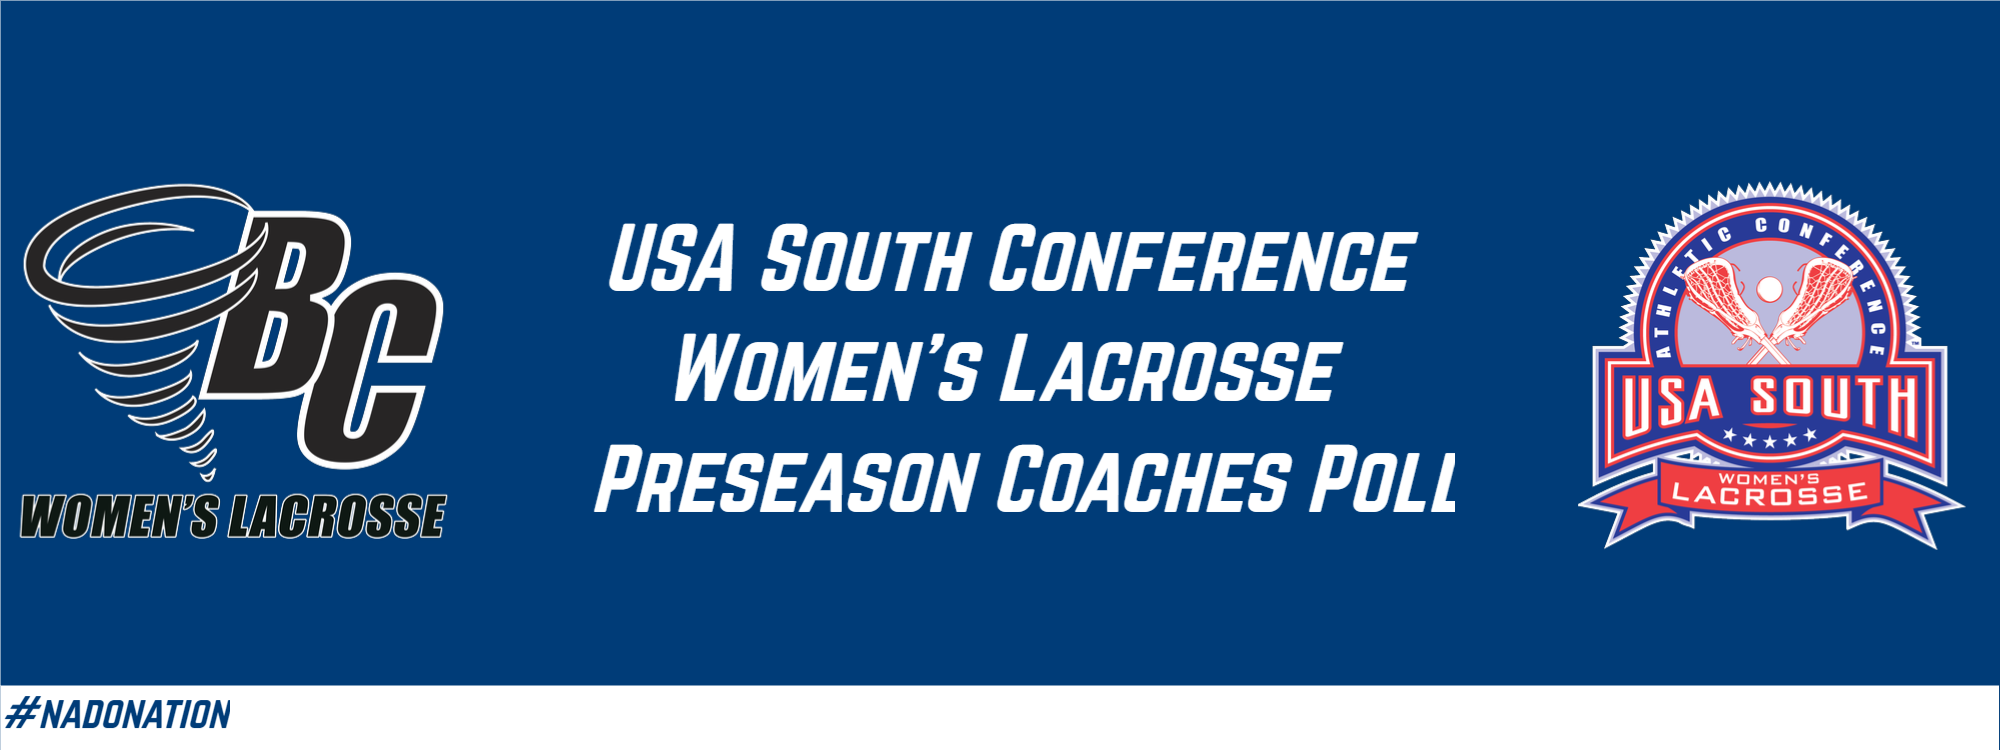 Women’s Lacrosse Preseason Coaches Poll Released